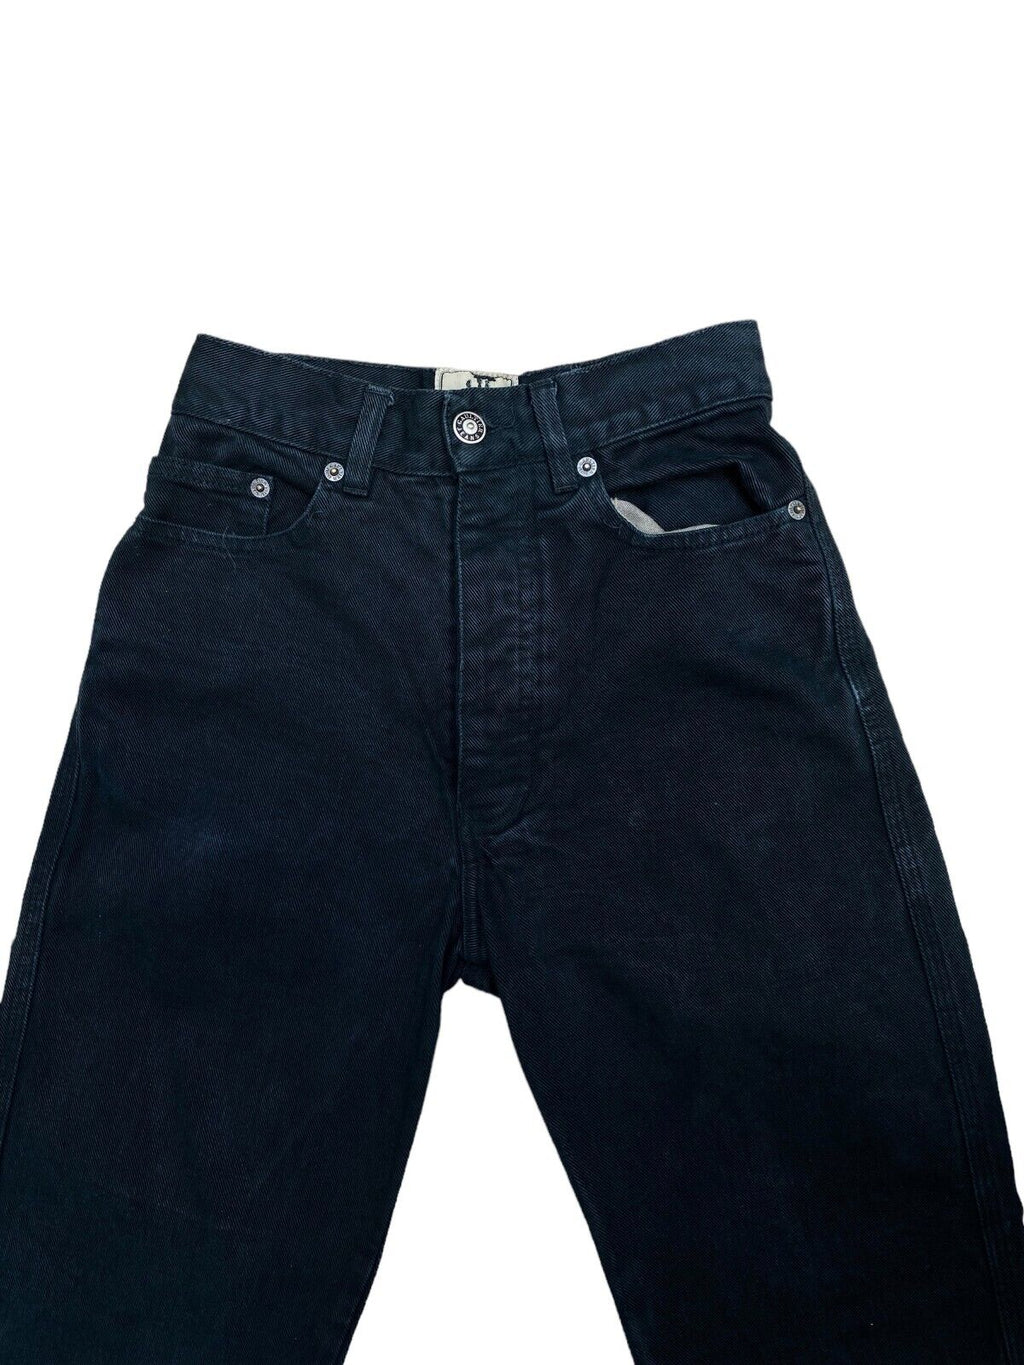 Vintage Flack Flare Denim Jeans Size US 25